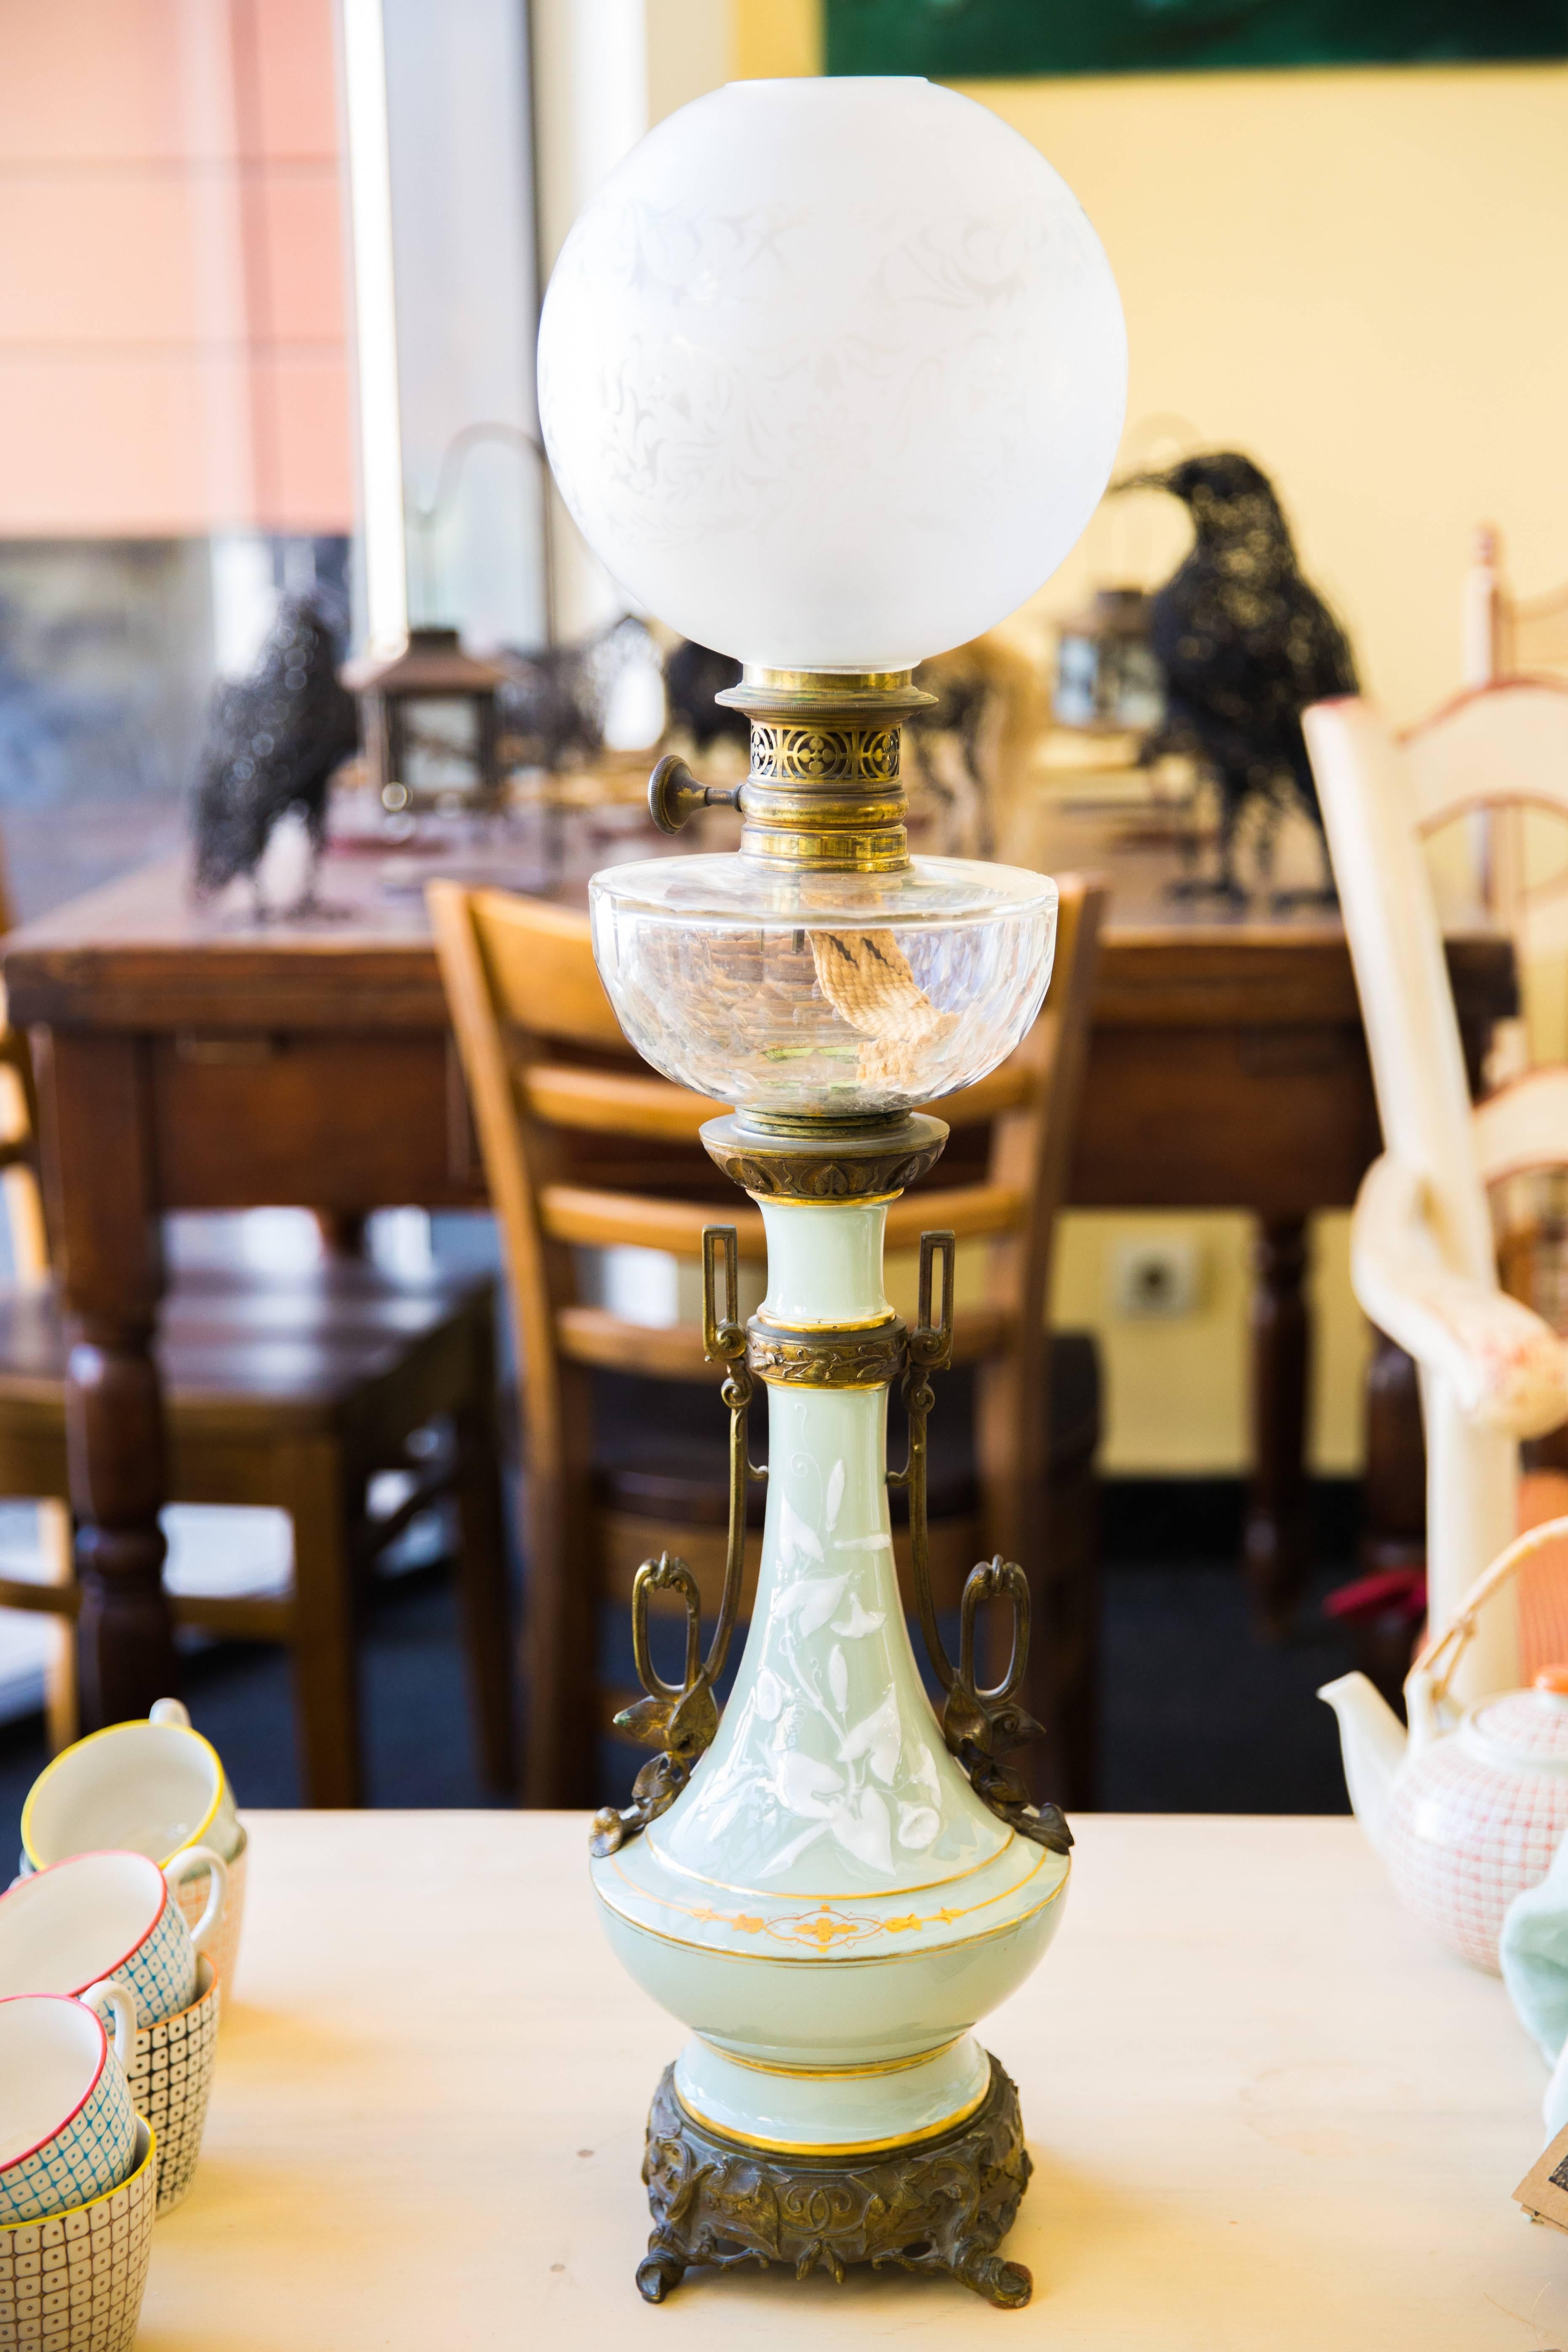 Exceptionnelle lampe en porcelaine avec brûleur à huile d'origine, raccord en bronze et boule en verre opalin gravé. Motifs floraux peints à la main sur un fond bleu pâle. Lampe très élégante en très bon état,
France, datant d'environ 1900.